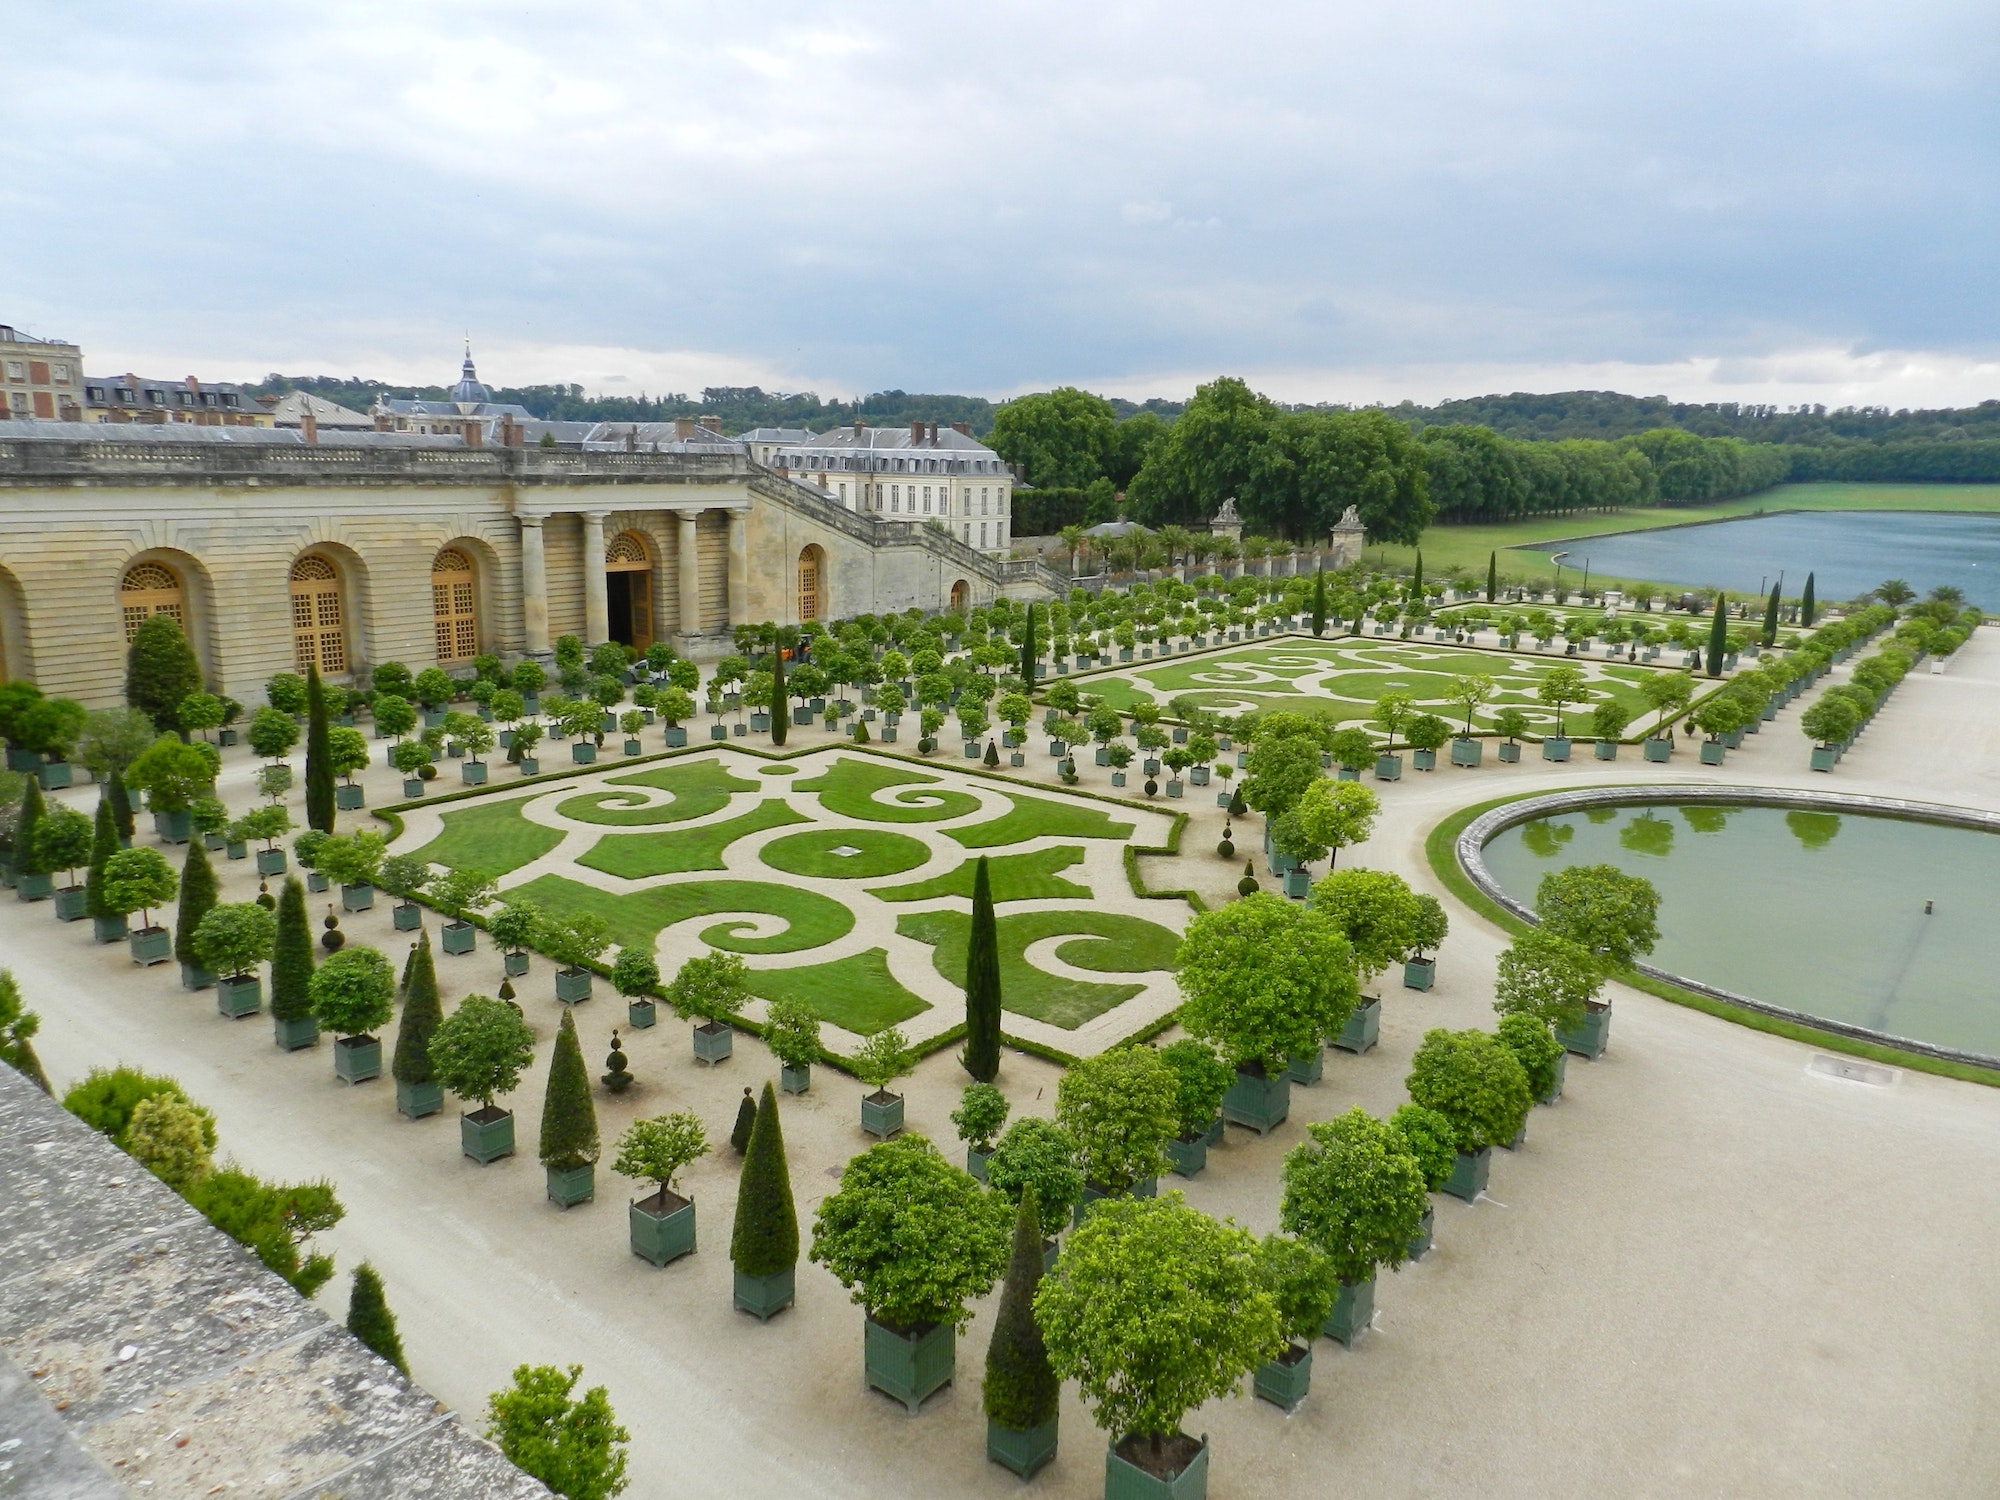 Gardens at Versailles Palace, France